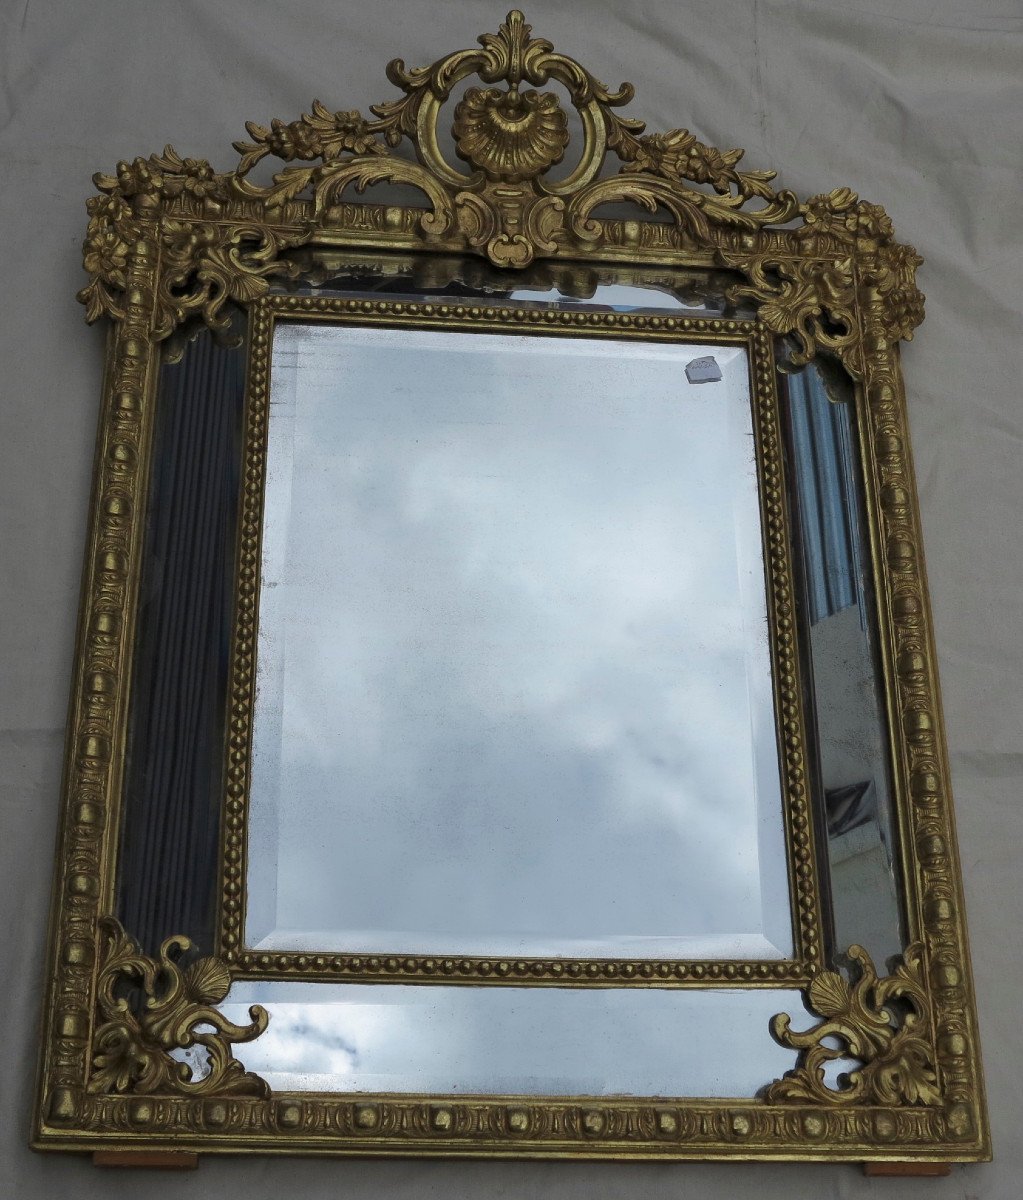 Miroir Style Régence à Coquille Glaces Mercure Parecloses Doré à L’or 120 X 88 Cm